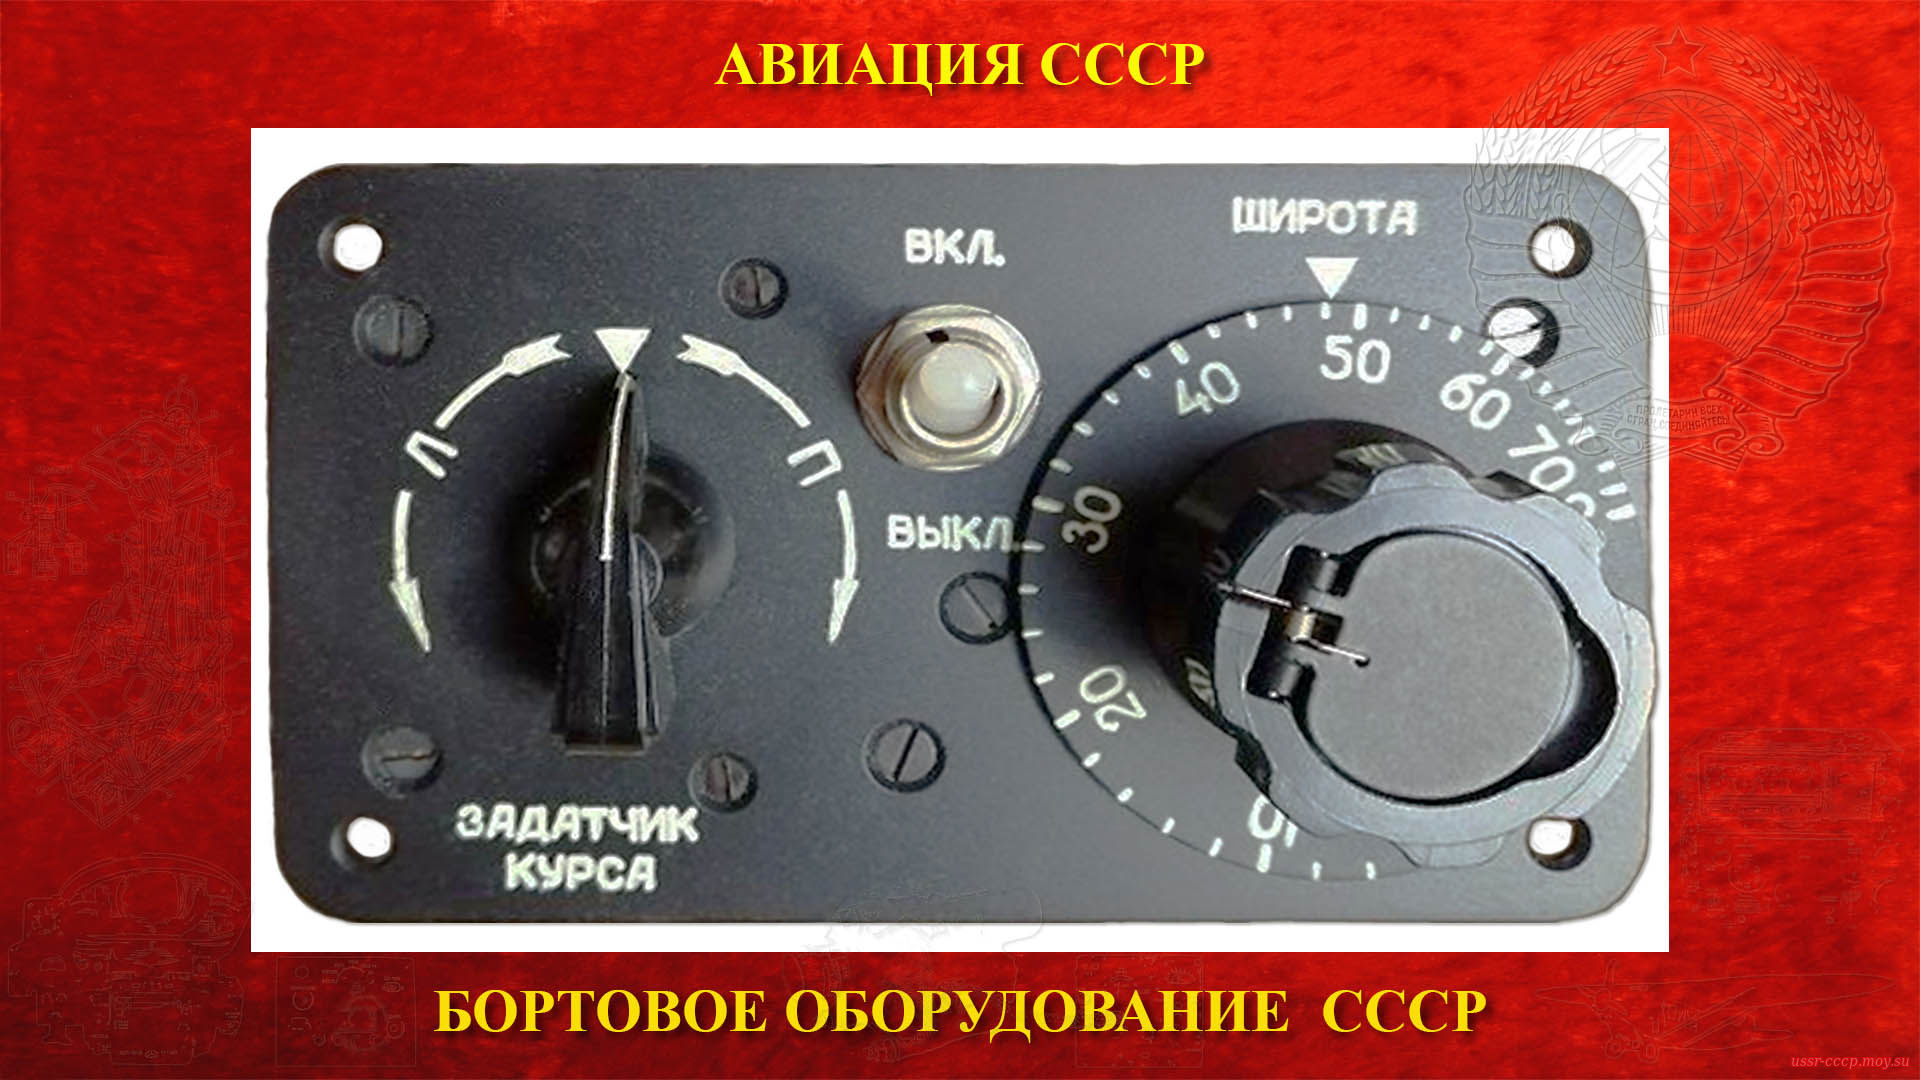 ГПК-52 — Гирополукомпас СССР (повествование)